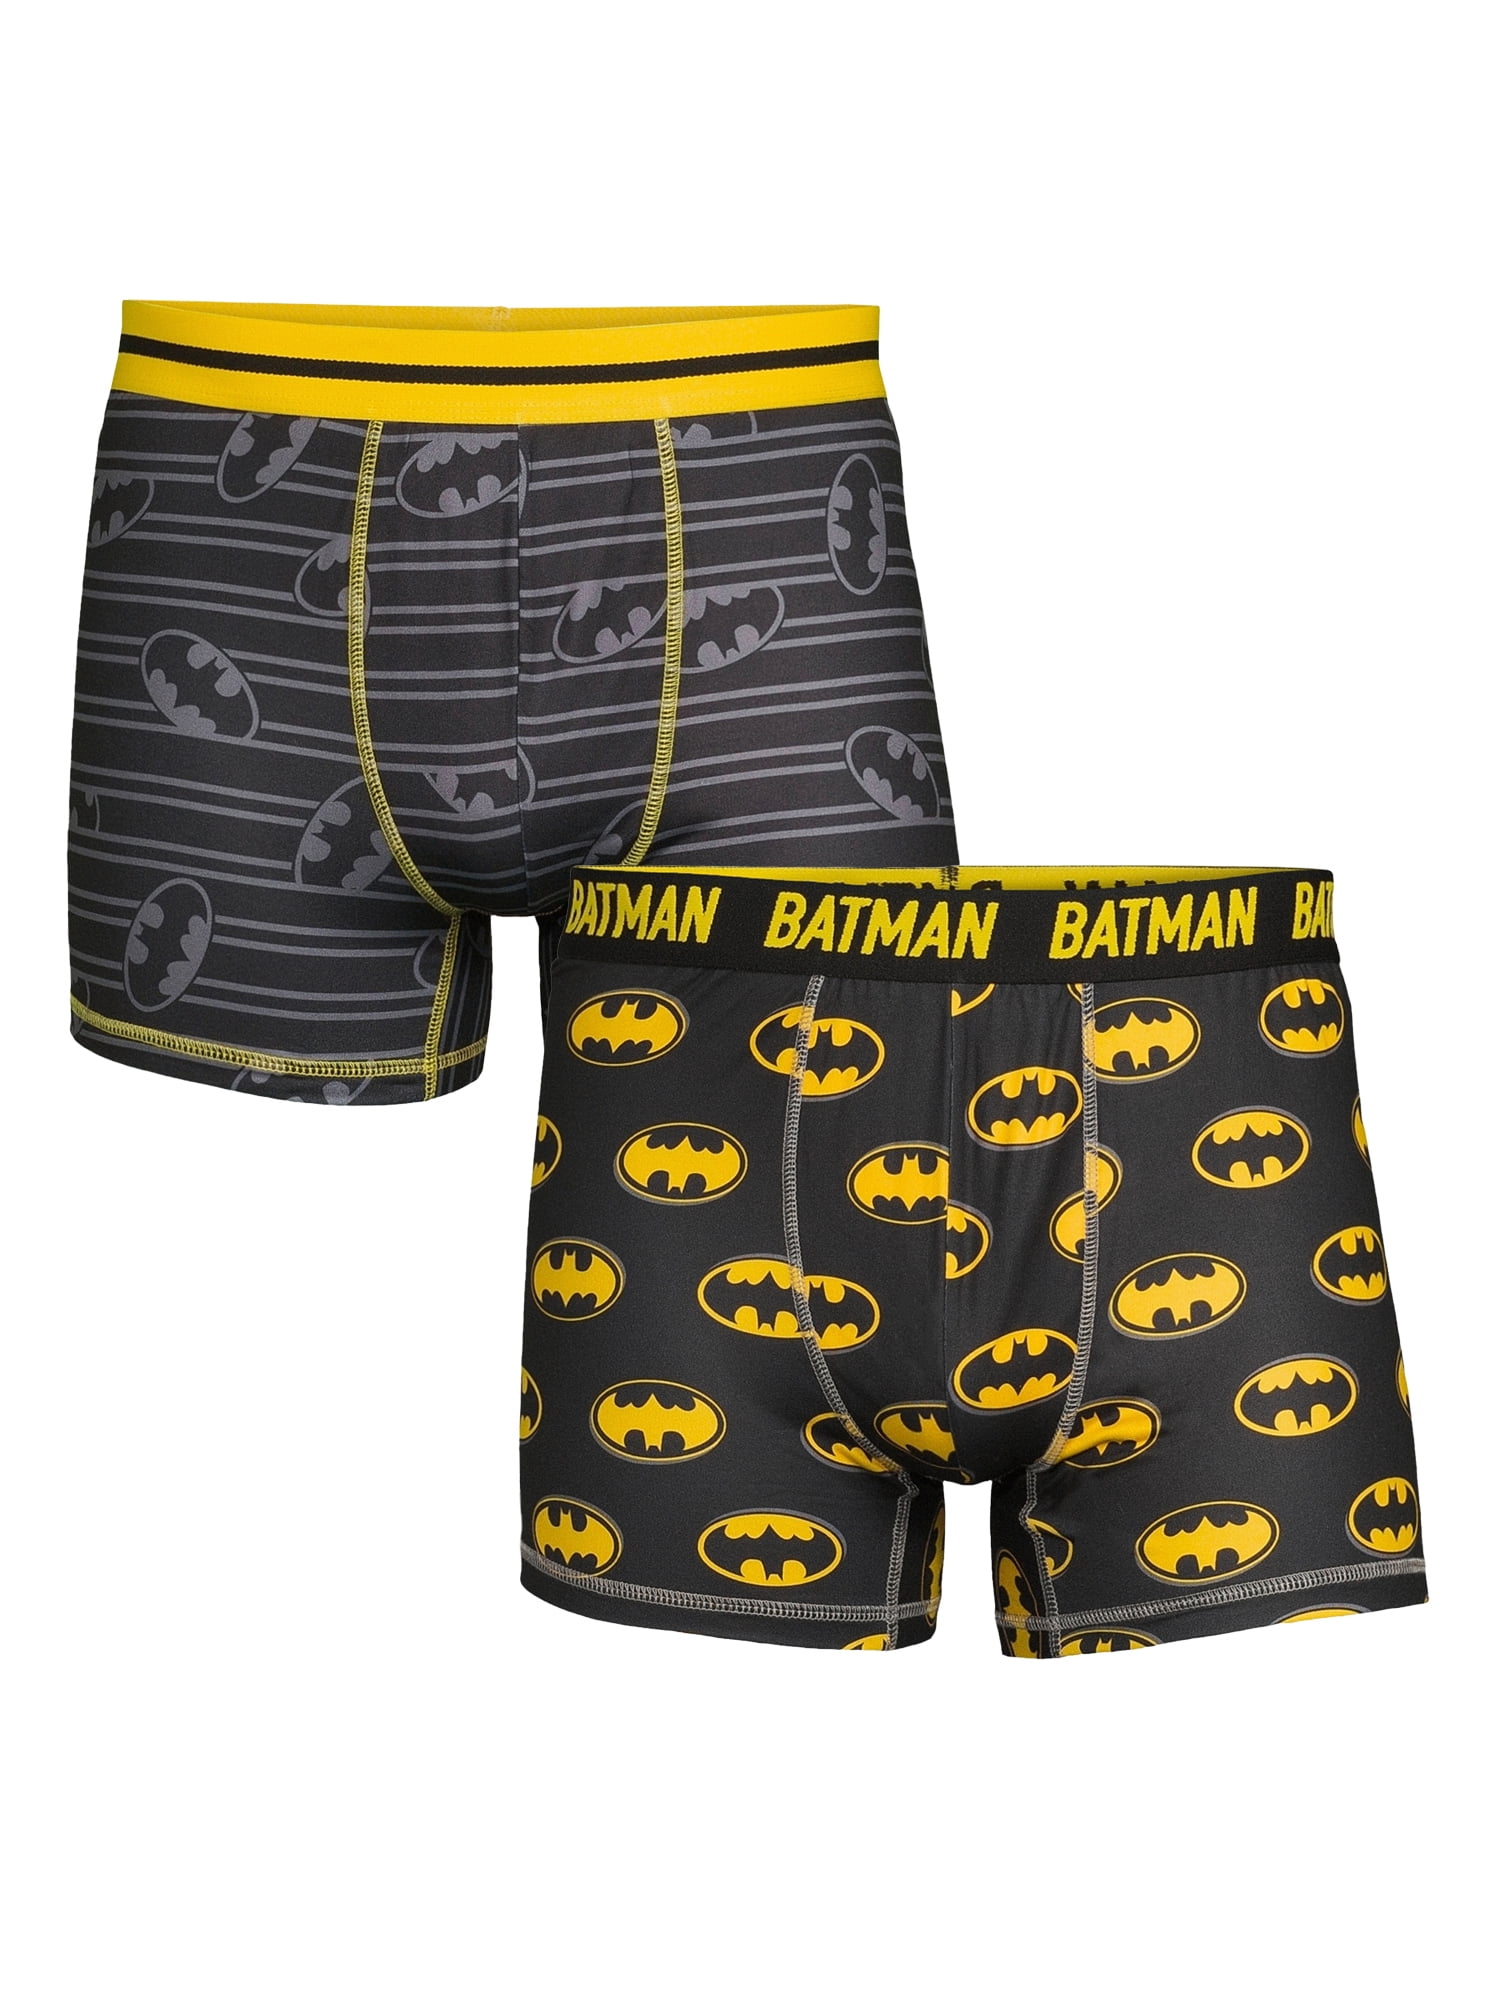 Batman Underwear Mens Large 36-38 DC Comics Unique Flag Boxers Superhero  Snug